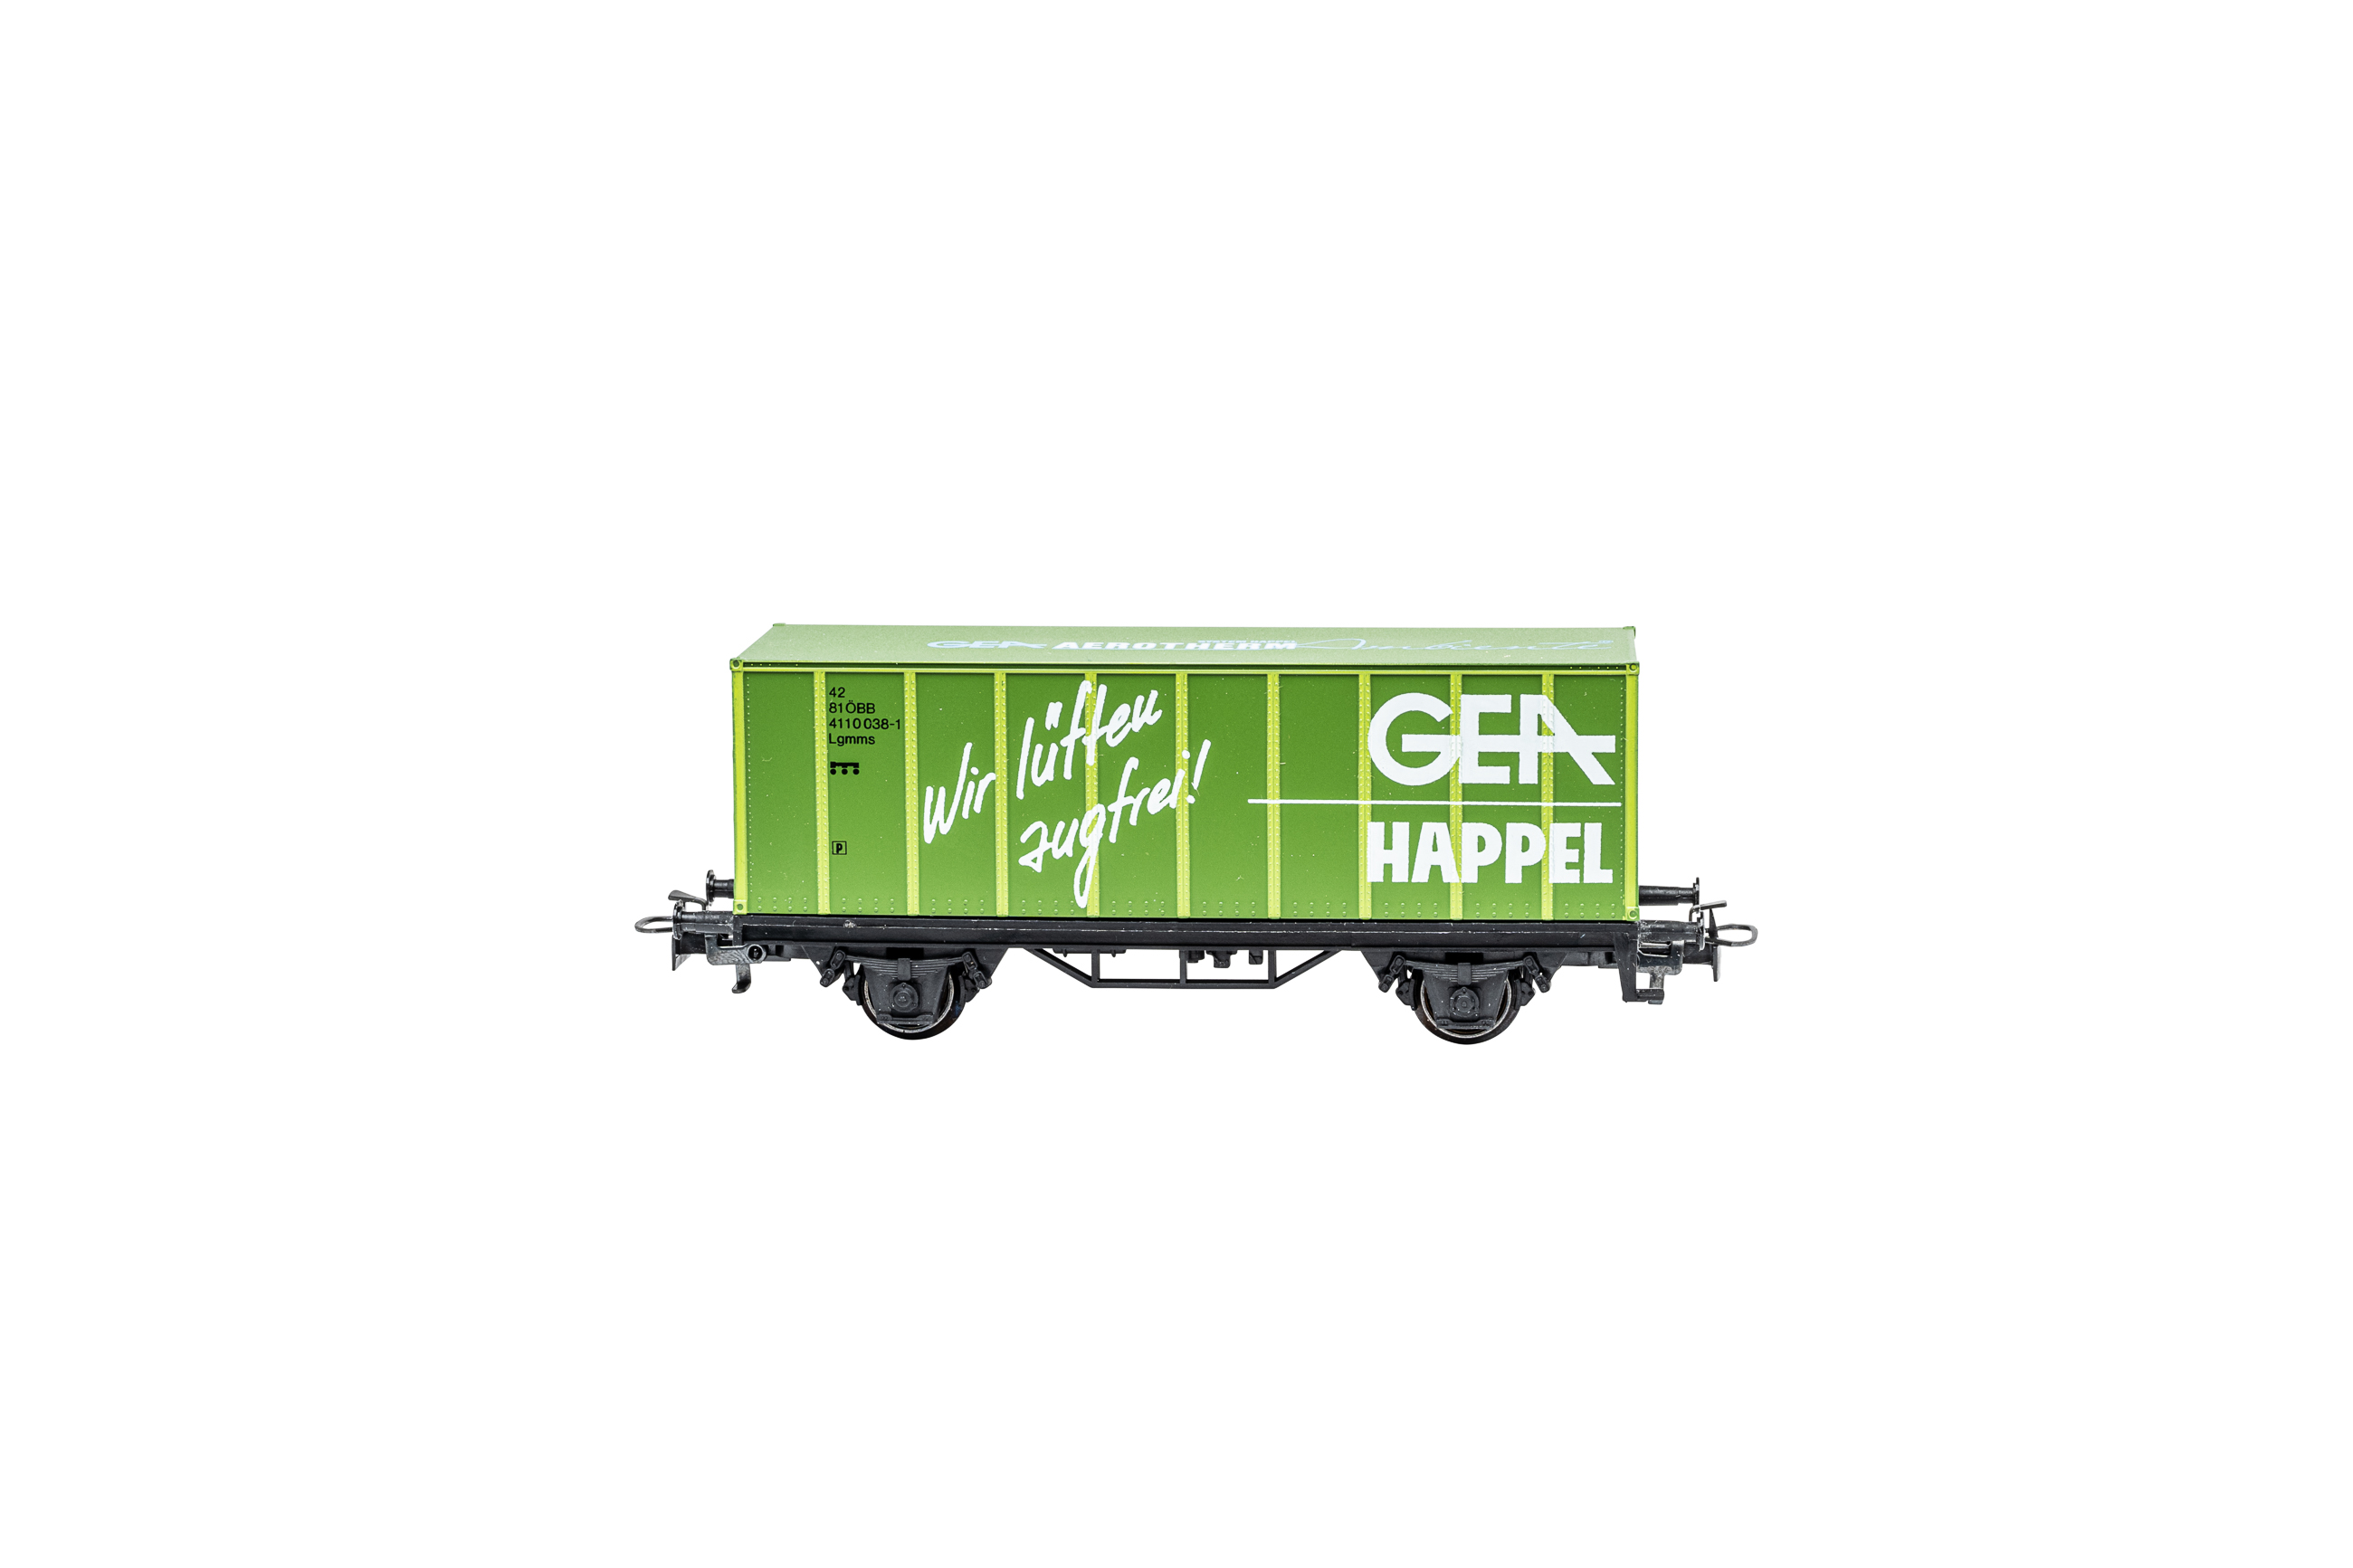 Märklin Containerwagen Gea Happel - H0